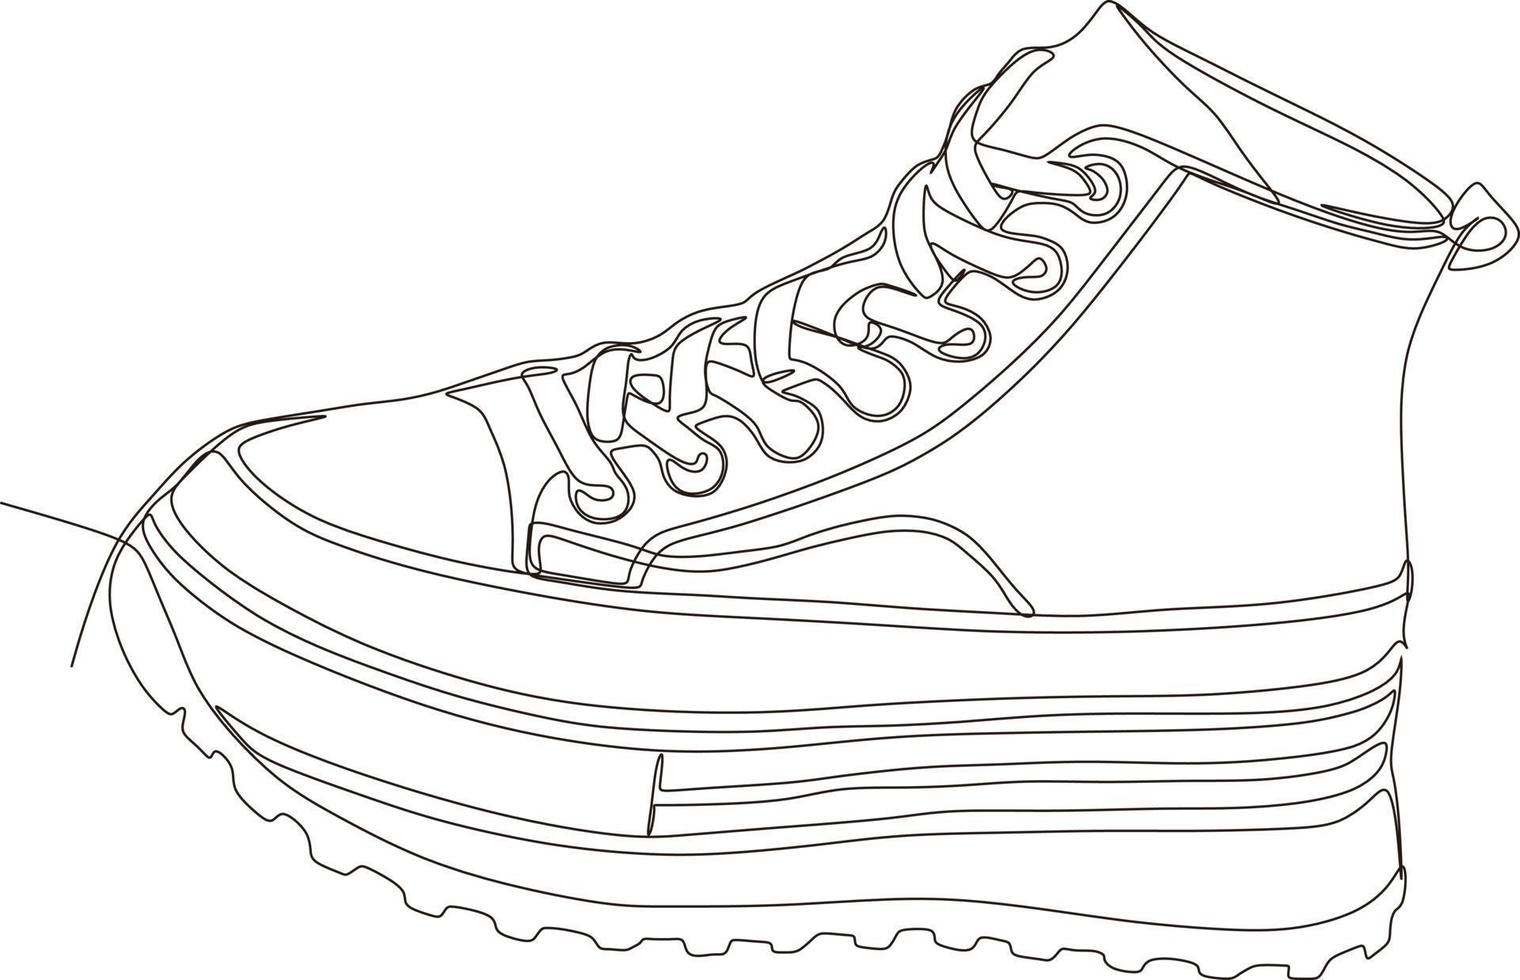 dessin au trait continu de chaussures en noir et blanc vecteur